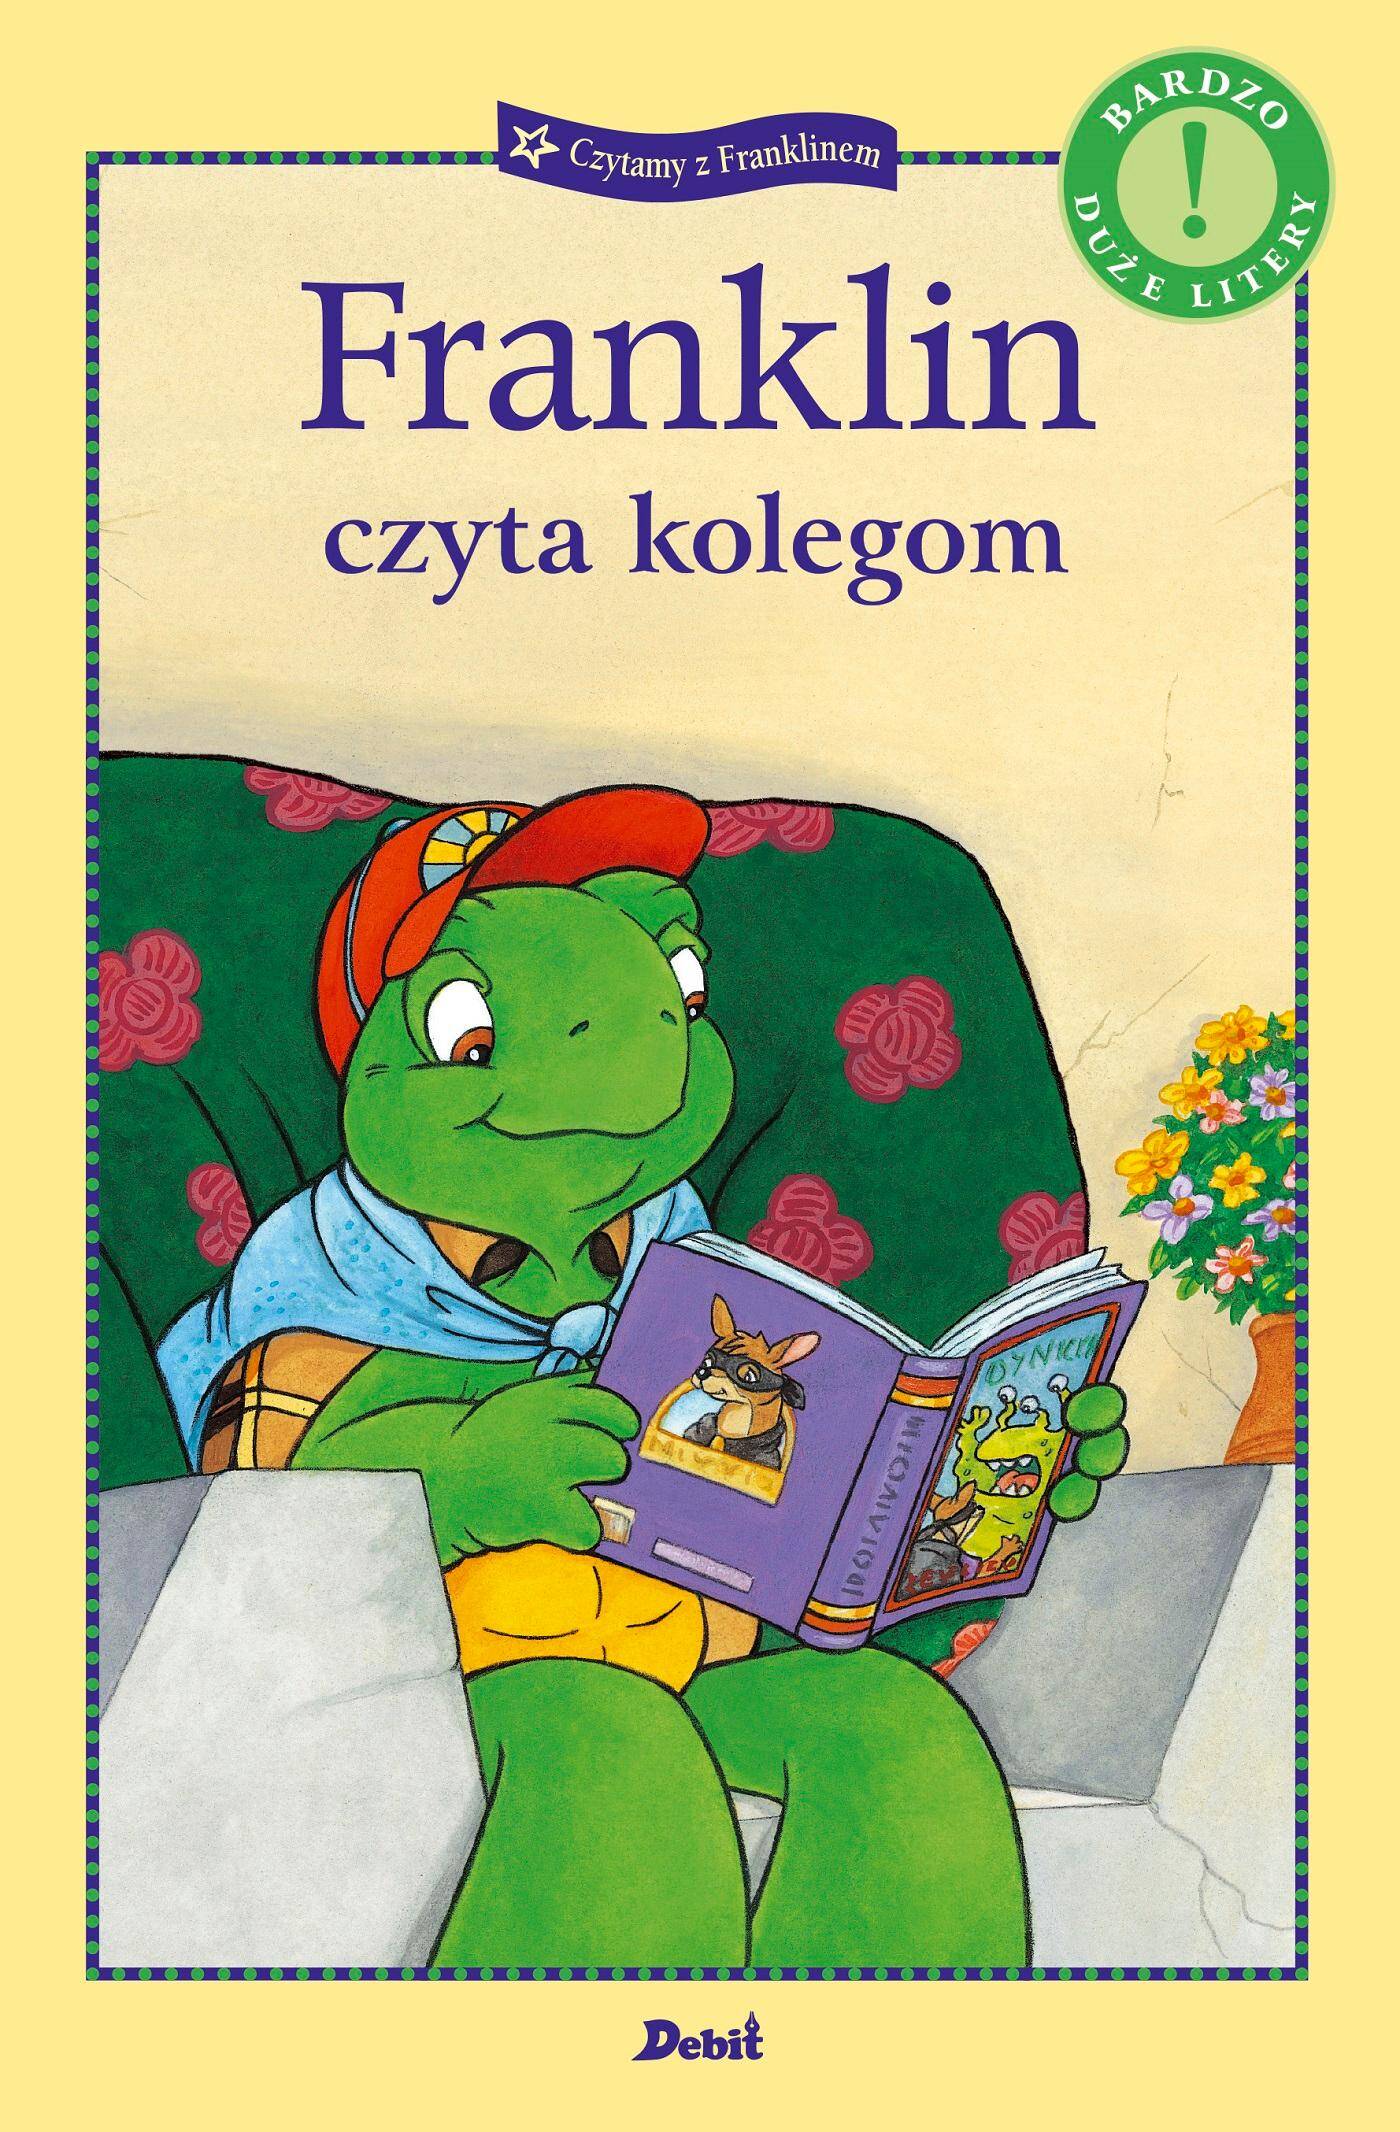 Franklin czyta kolegom. Czytamy z Franklinem